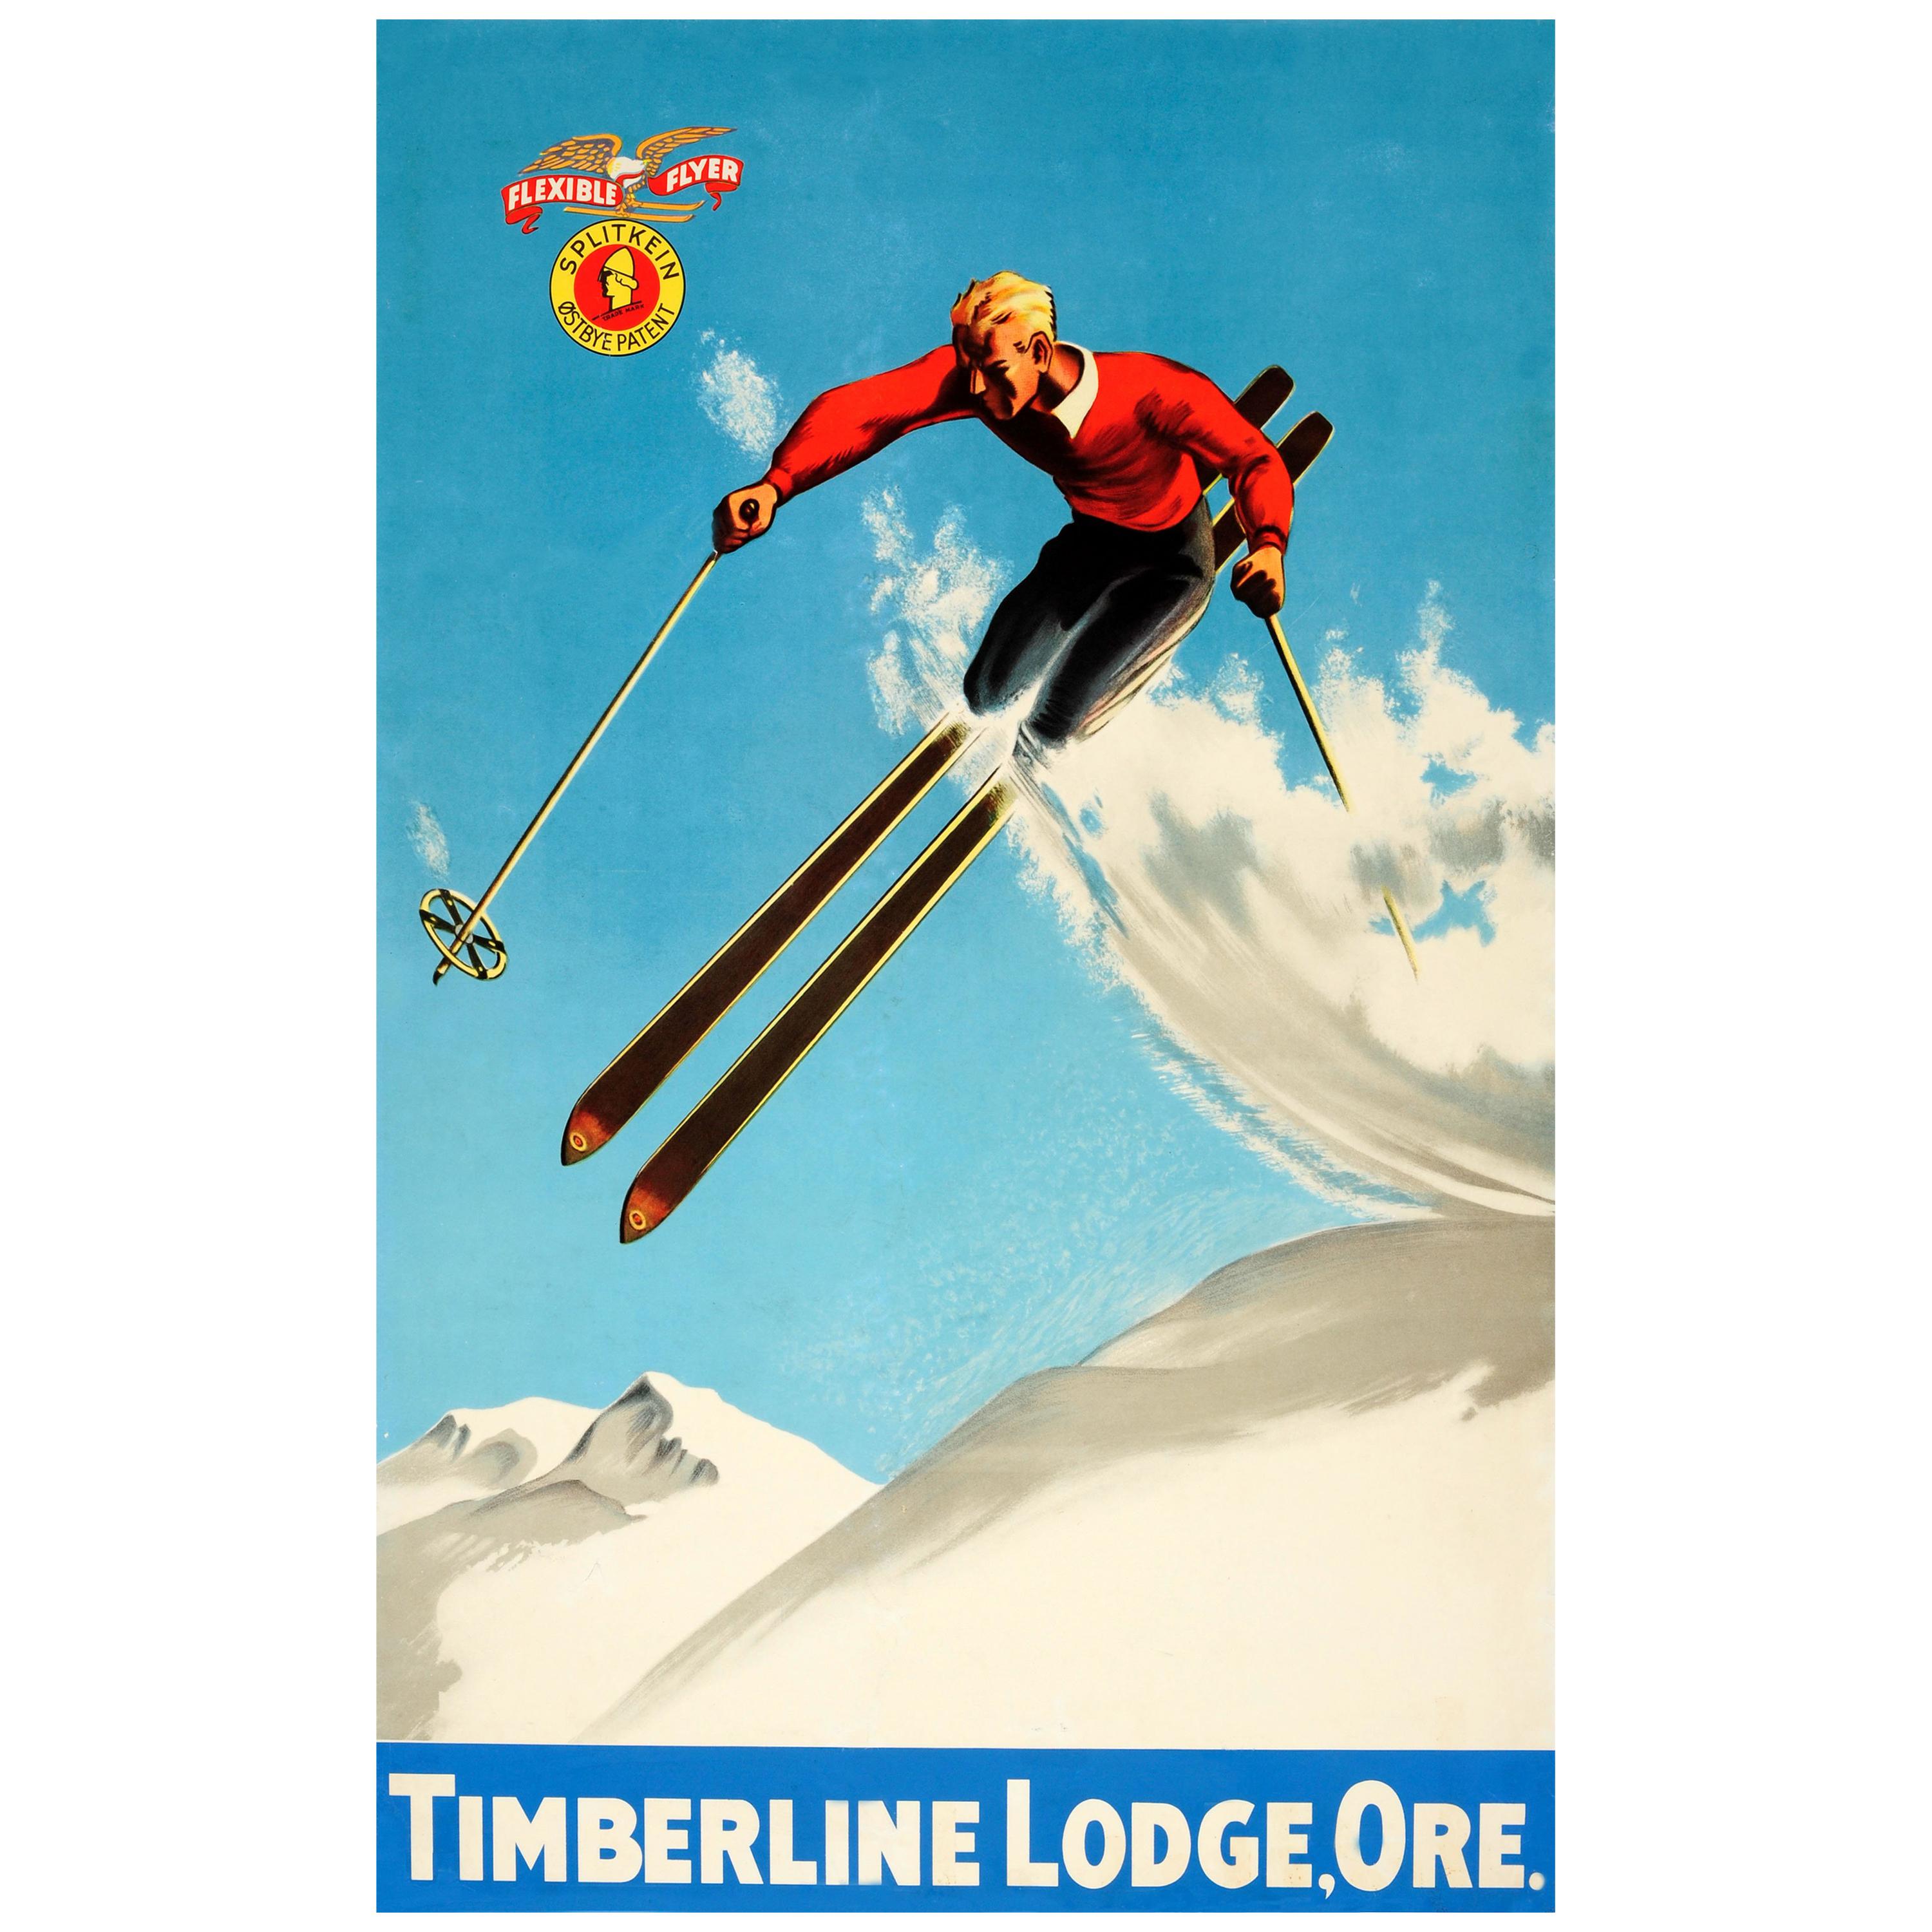 Original Vintage 1930s Ski Poster For Timberline Lodge Oregon & Splitkein Ostbye